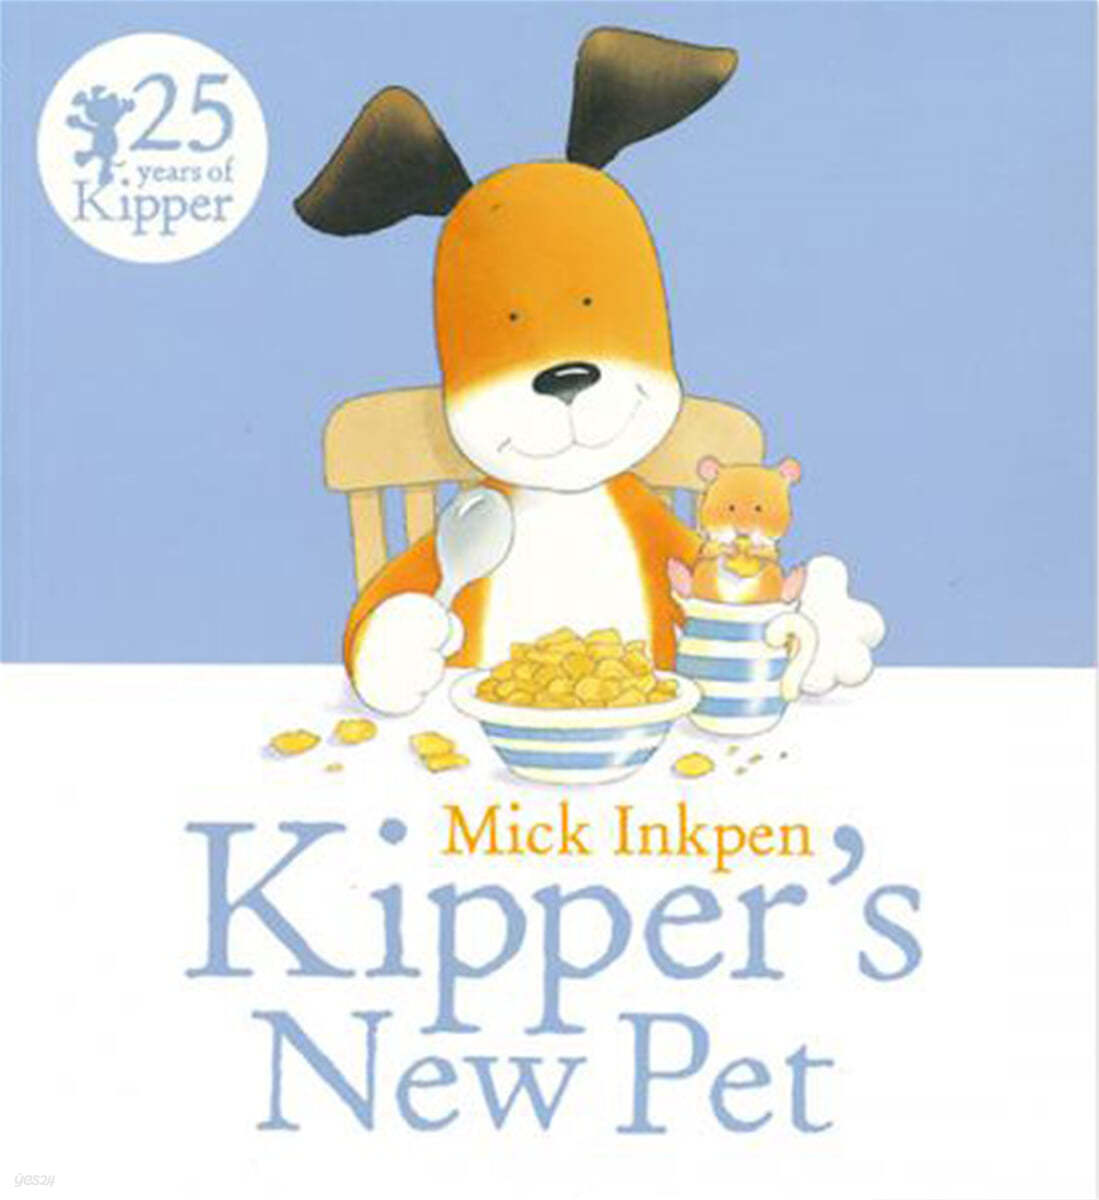 Kipper's <span>n</span>ew pet